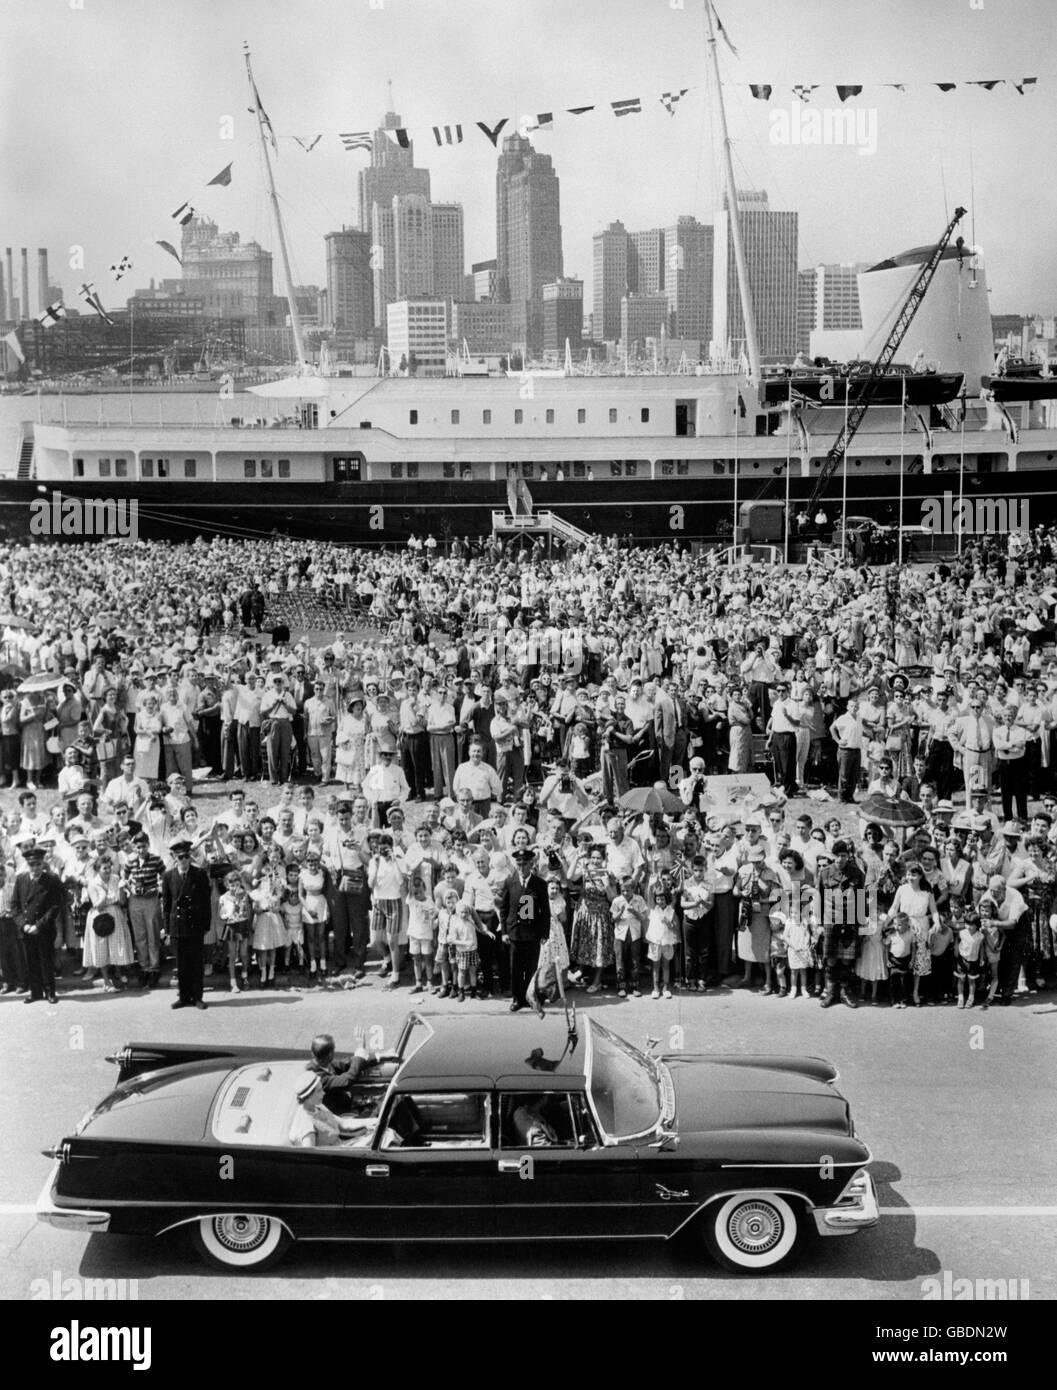 La reine Elizabeth II, duc d'Édimbourg, qui applaudisse les Canadiens et les Américains, le yacht royal Britannia et la célèbre ligne d'horizon américaine de Detroit, Michigan, sont tous vus dans cette impressionnante photo du Royal Tour of Canada. Banque D'Images